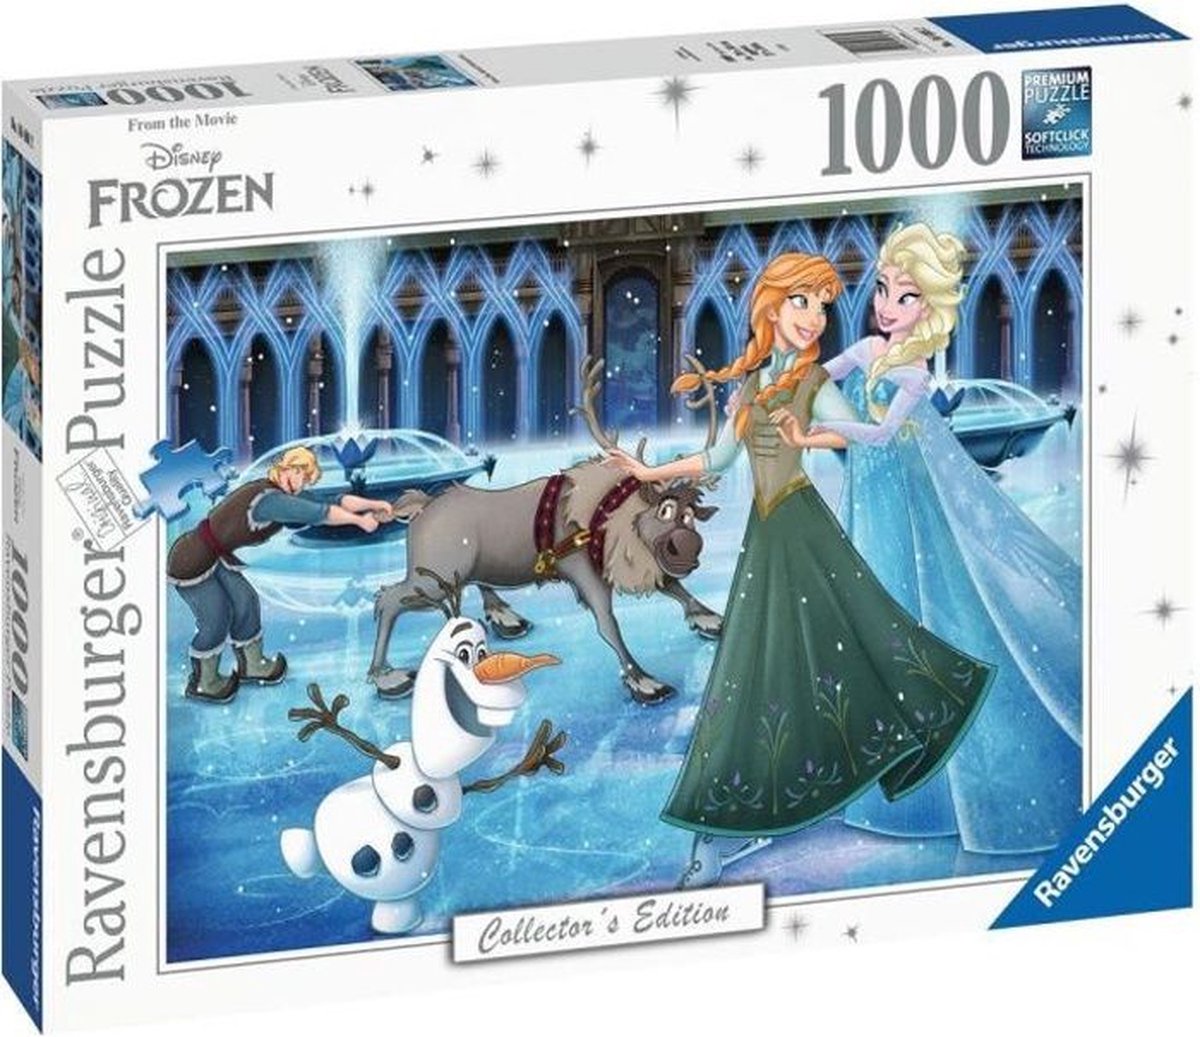 Ravensburger Puzzel 1000 P - Frozen (Disney Collectie)